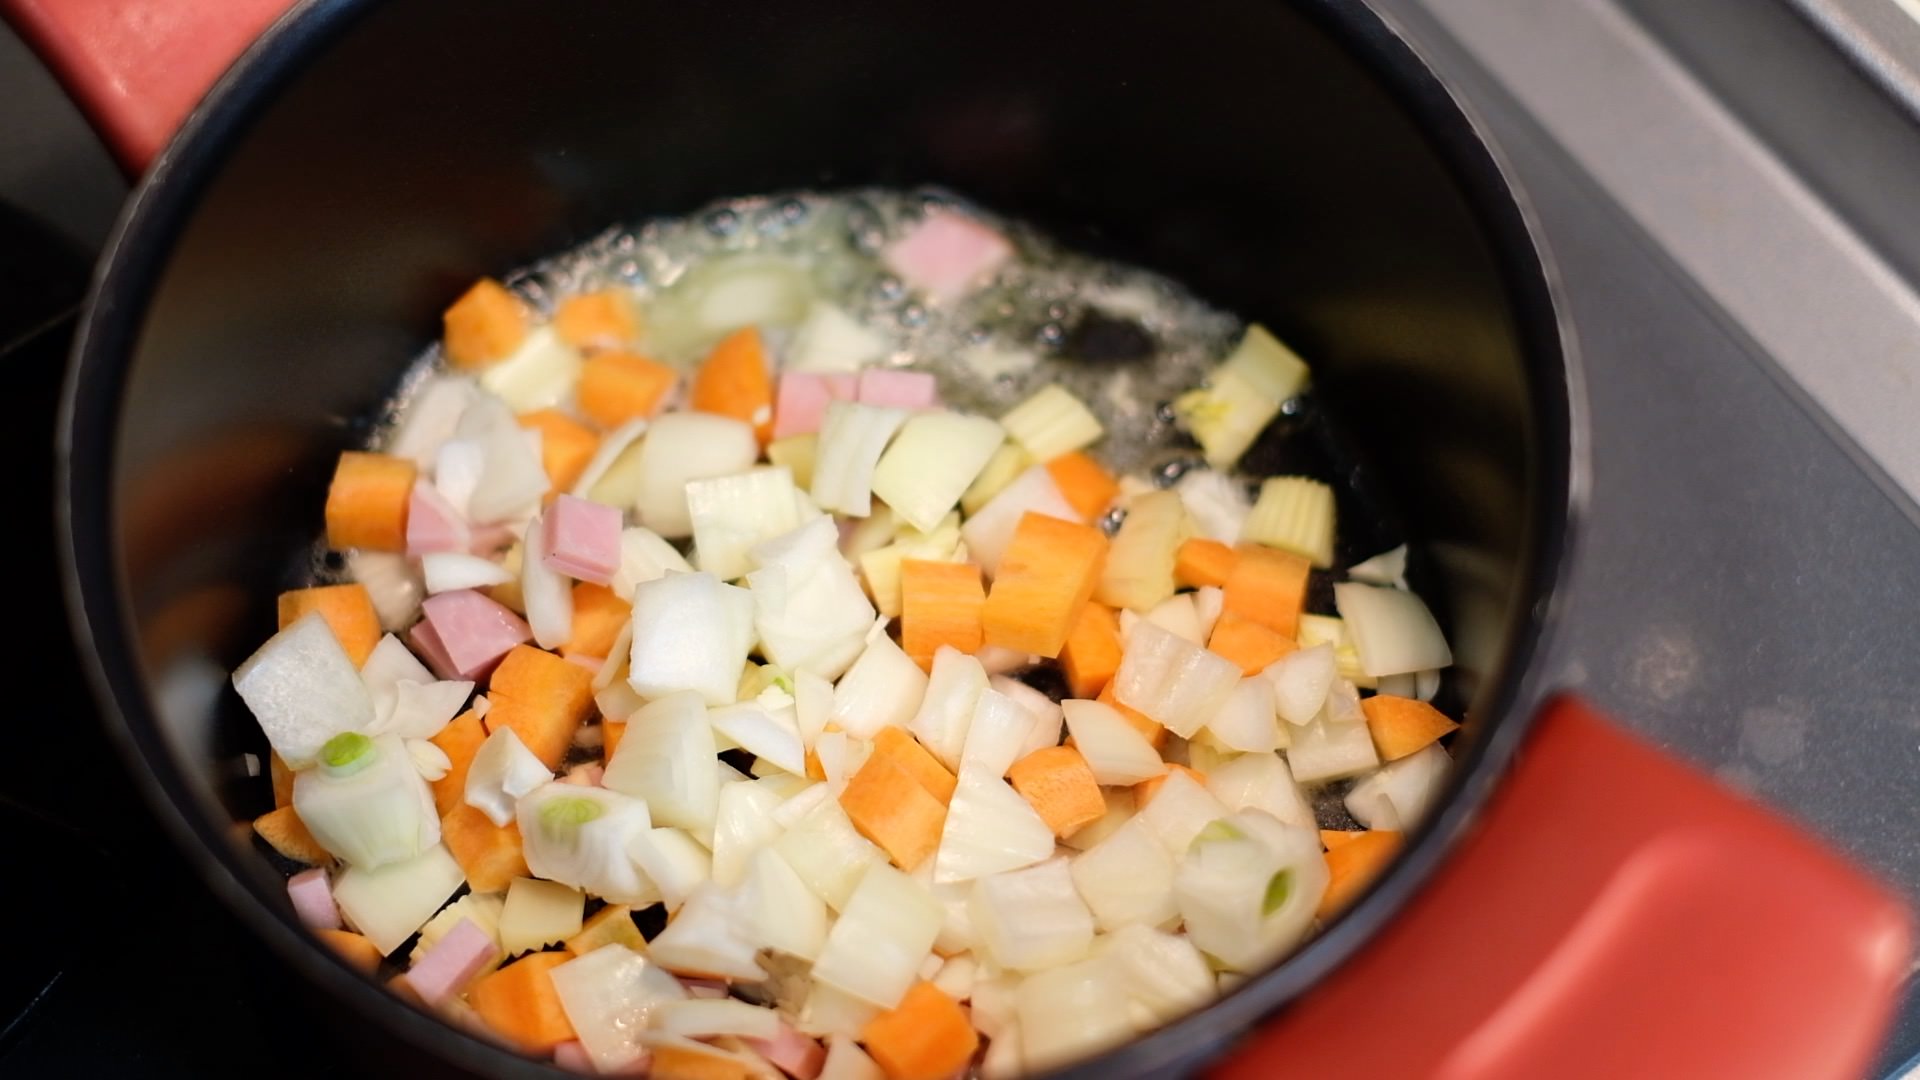 バターを加熱した鍋に香味野菜とハム、塩を少々加え、中火で炒める様子の画像です